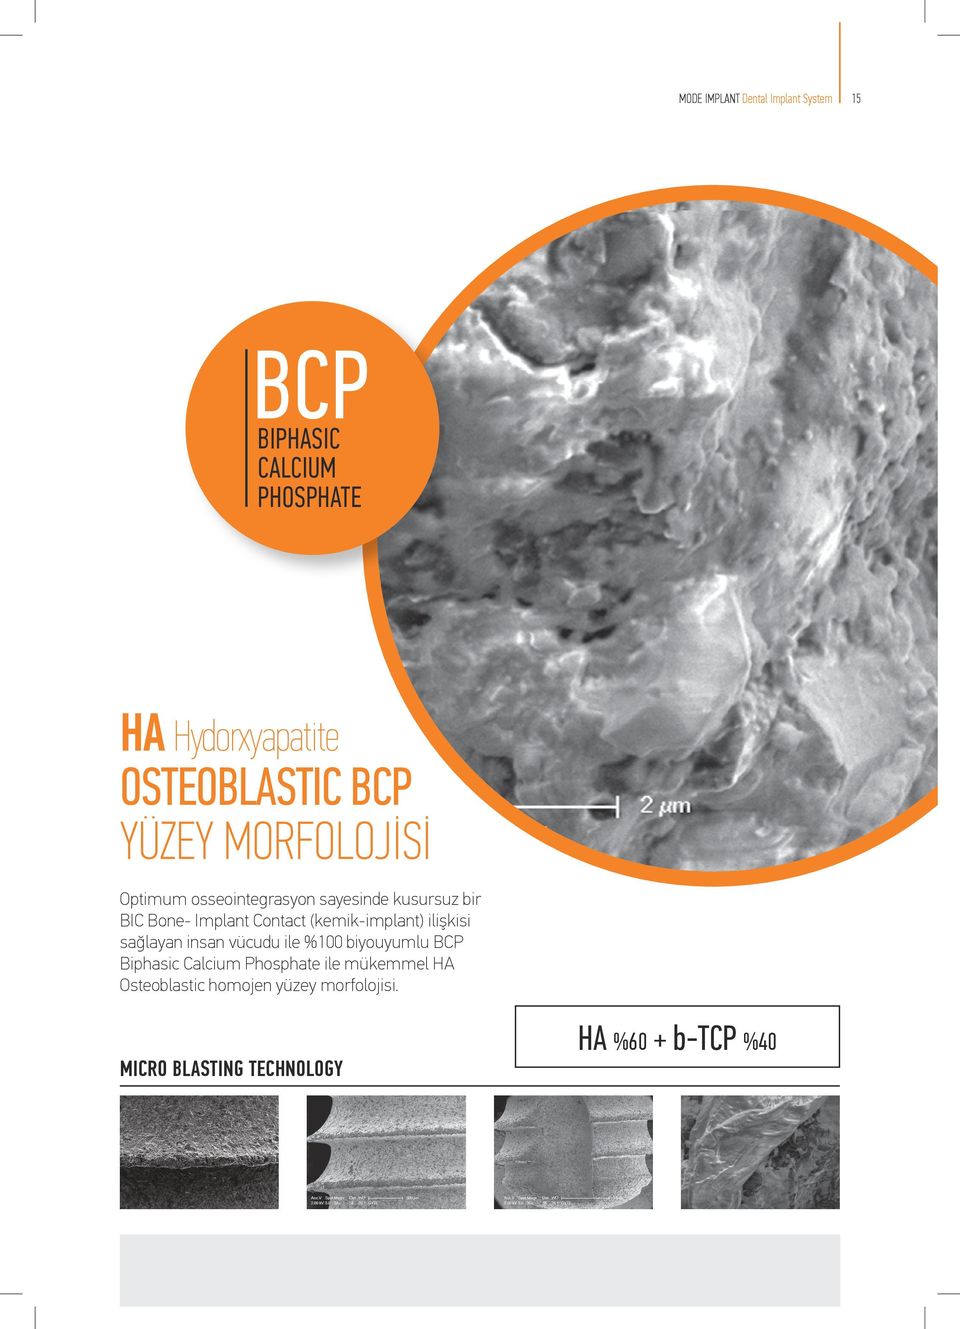 (kemikimplant) ilişkisi sağlayan insan vücudu ile %100 biyouyumlu BCP Biphasic Calcium